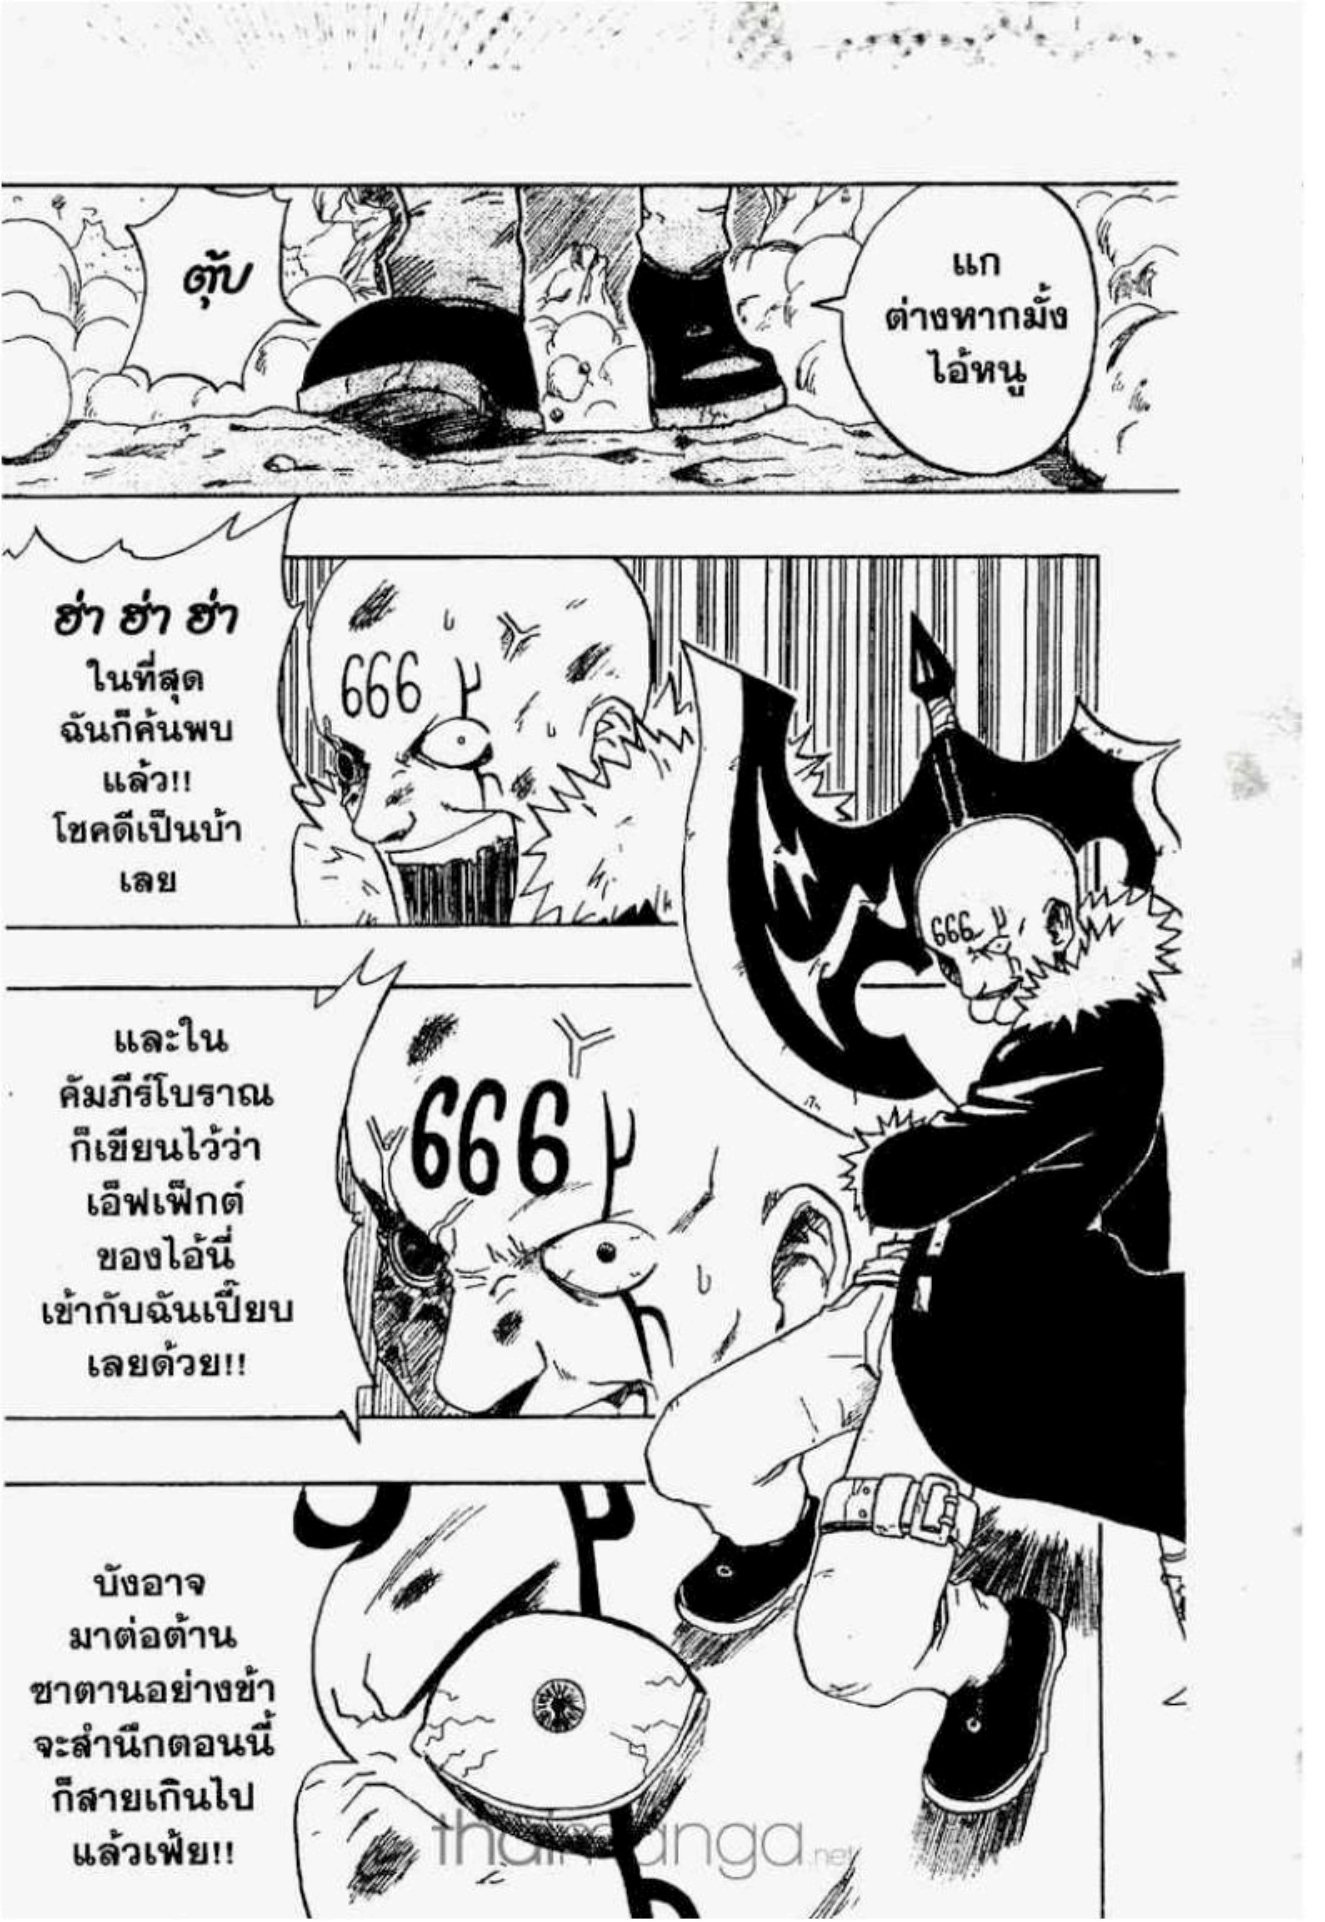 666 ซาตาน